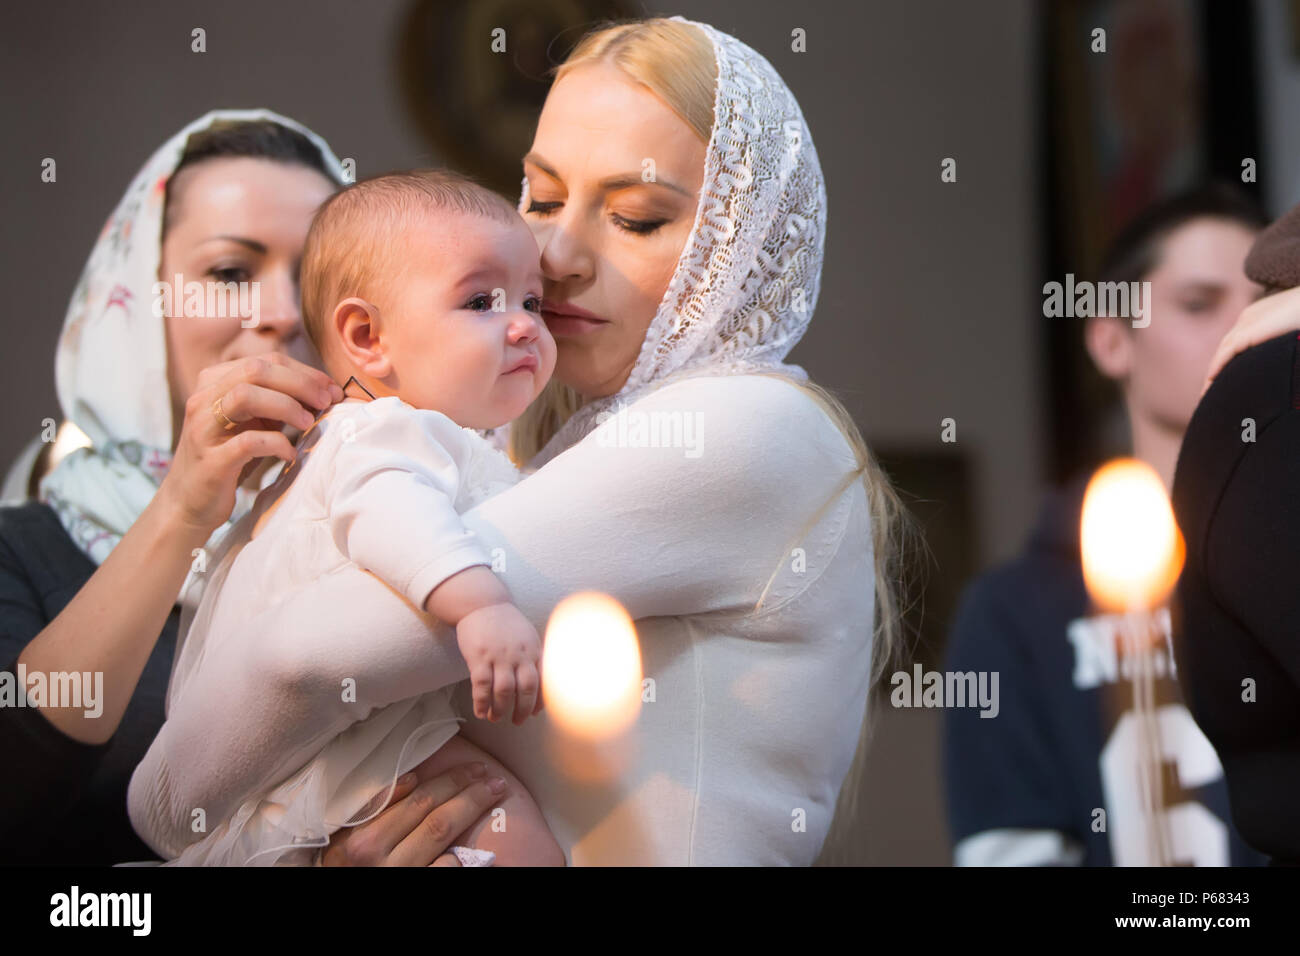 Belarus, Gomel, am 25. März. 2018. Die Prudhkovsky Kirche. Kind in die Arme der Mutter. Taufe des Babys. Akzeptieren Sie den Glauben. In der Kirche des Neugeborenen. Stockfoto